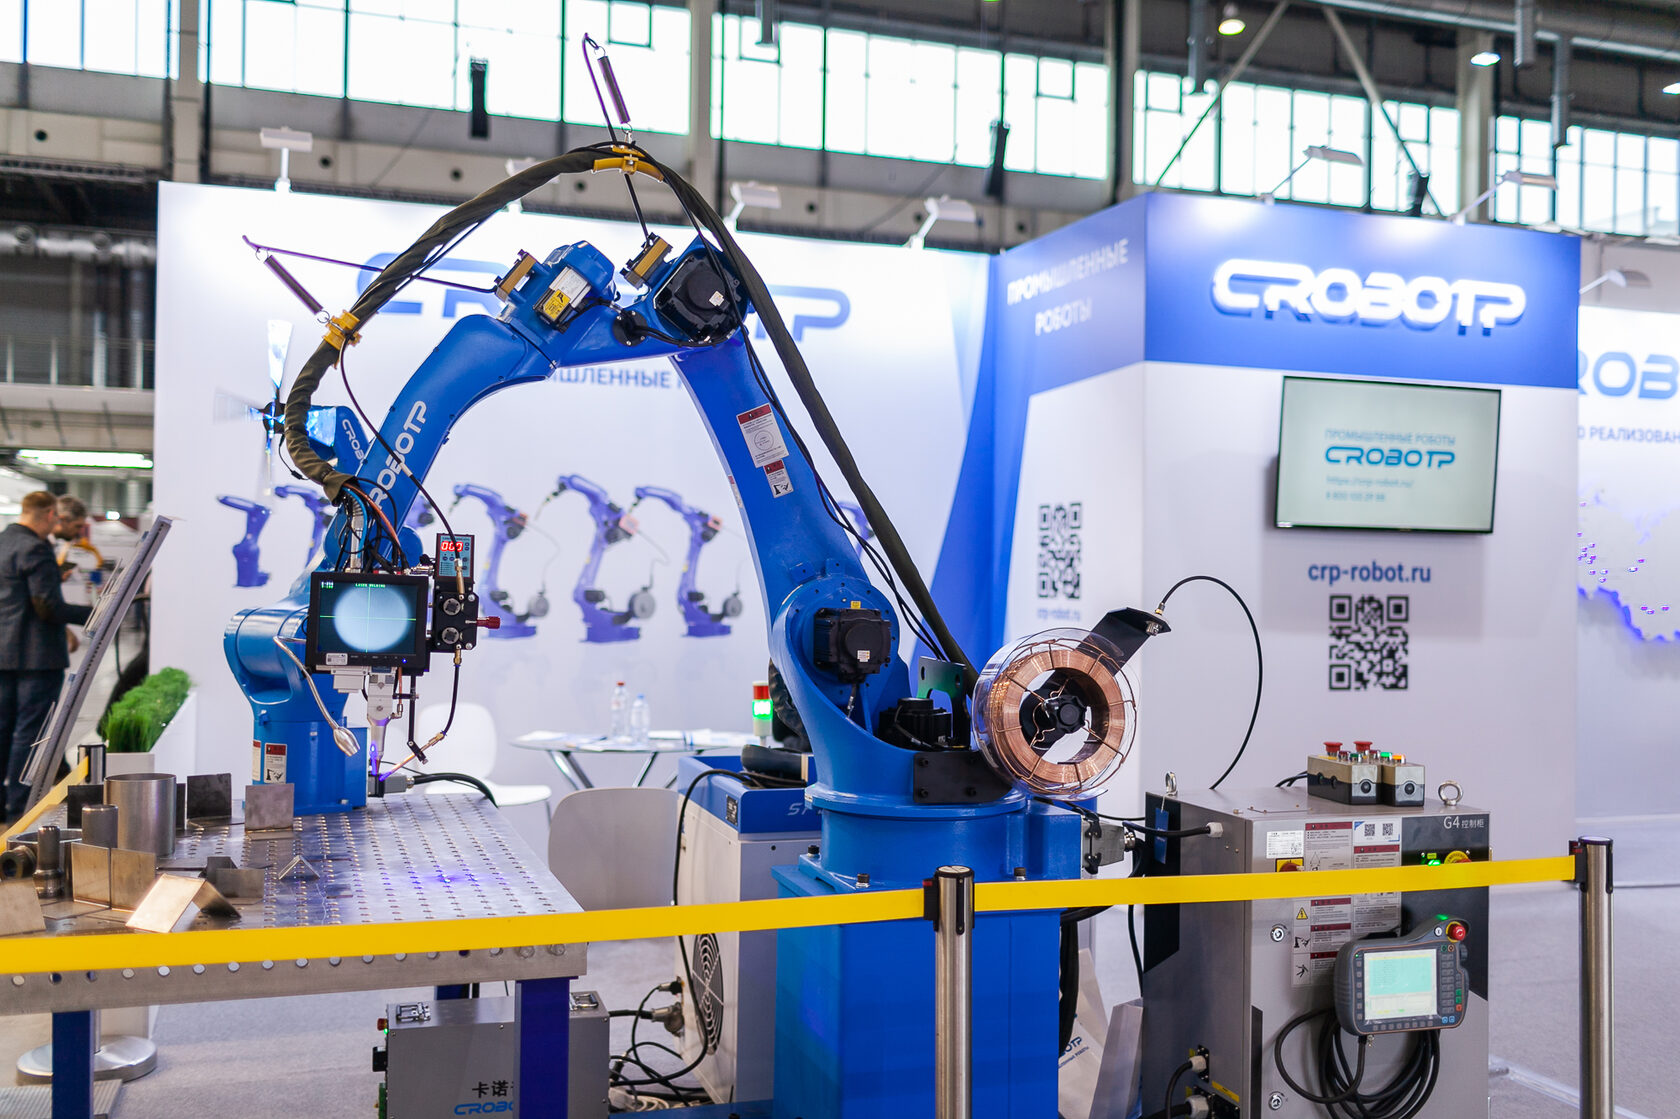 Промышленные роботы CROBOTP на выставке в Екатеринбурге 